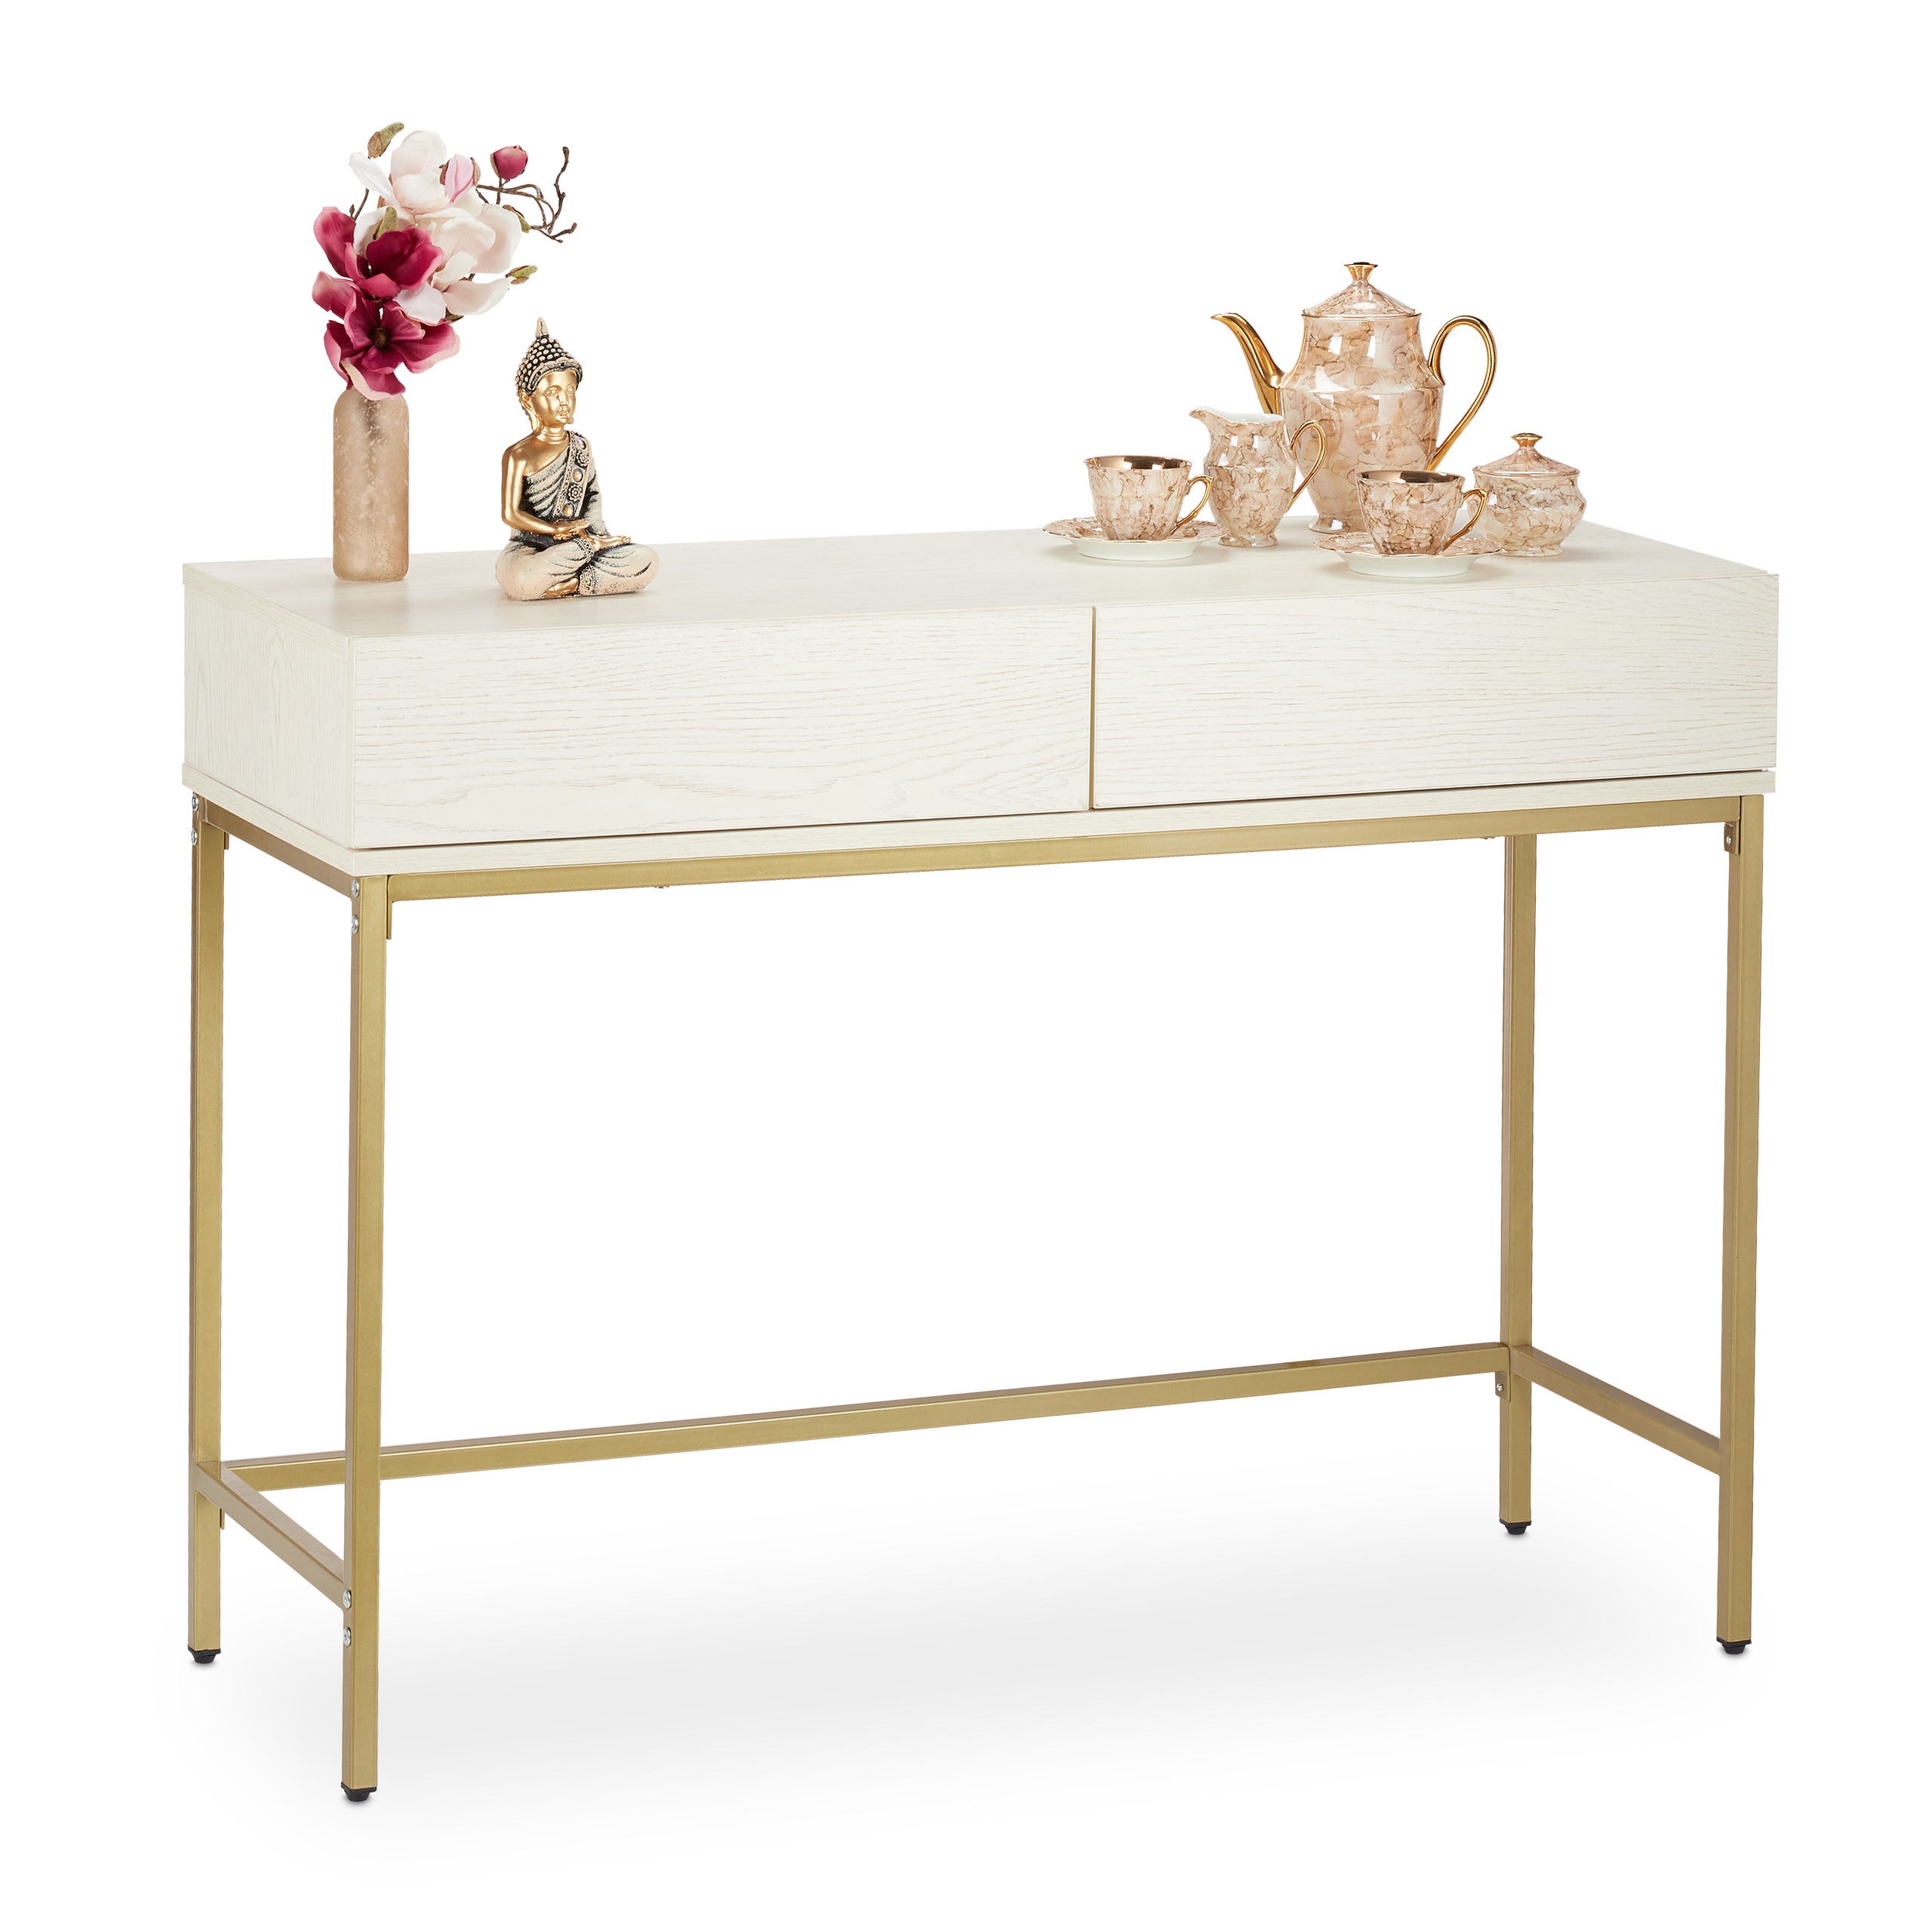 Consolle tavolo ingresso, colore legno scuro, decorazioni oro - Dimensioni:  103 cm - 42 cm - H 82 cm 0,15 Mc Stile classico - 100% Legno - Fianco